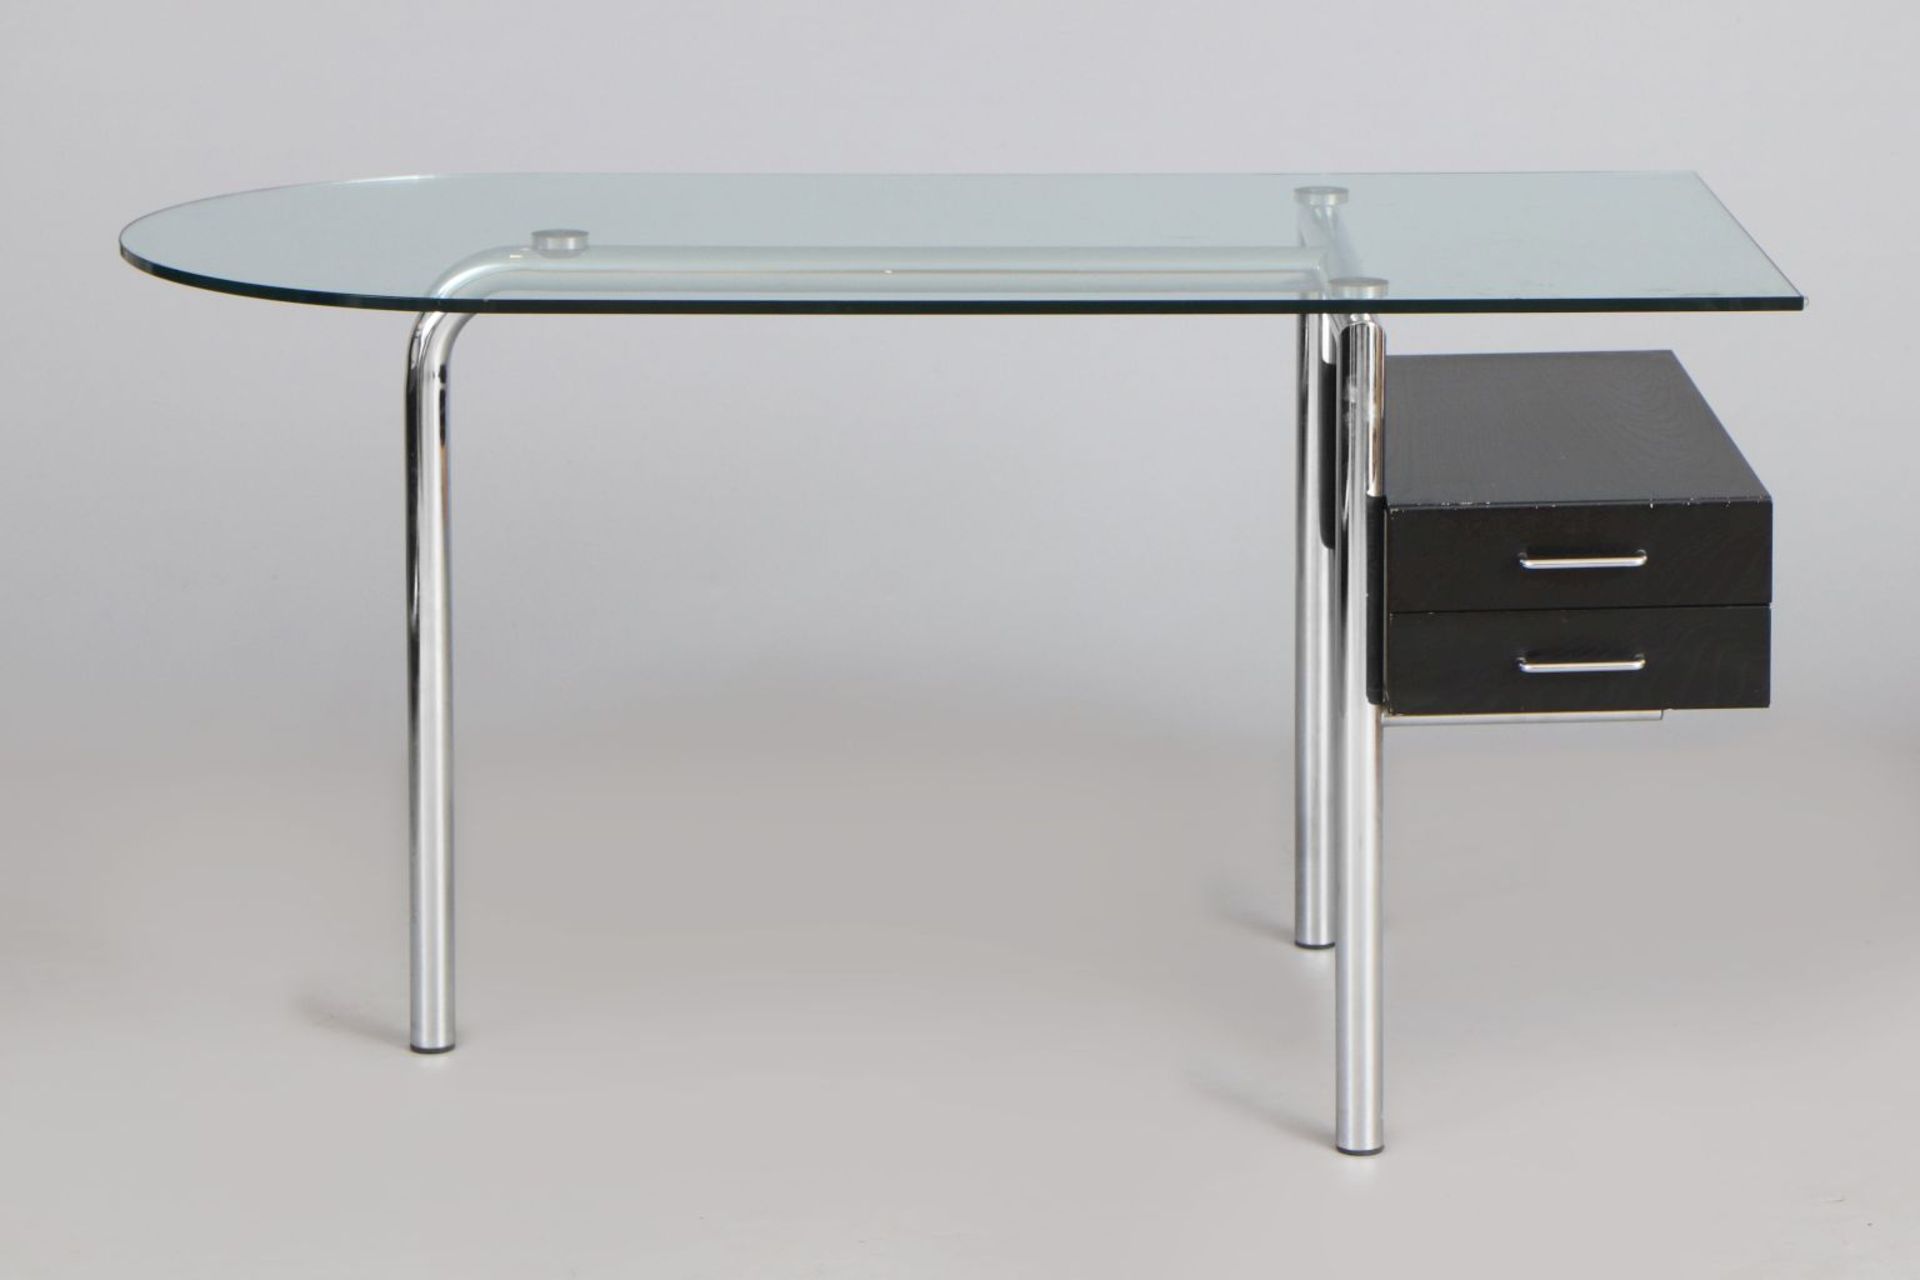 MIRTO Schreibtisch im Stile des Bauhausverchromtes Stahlrohr, Klarglasplatte, 2-schübiger Schu